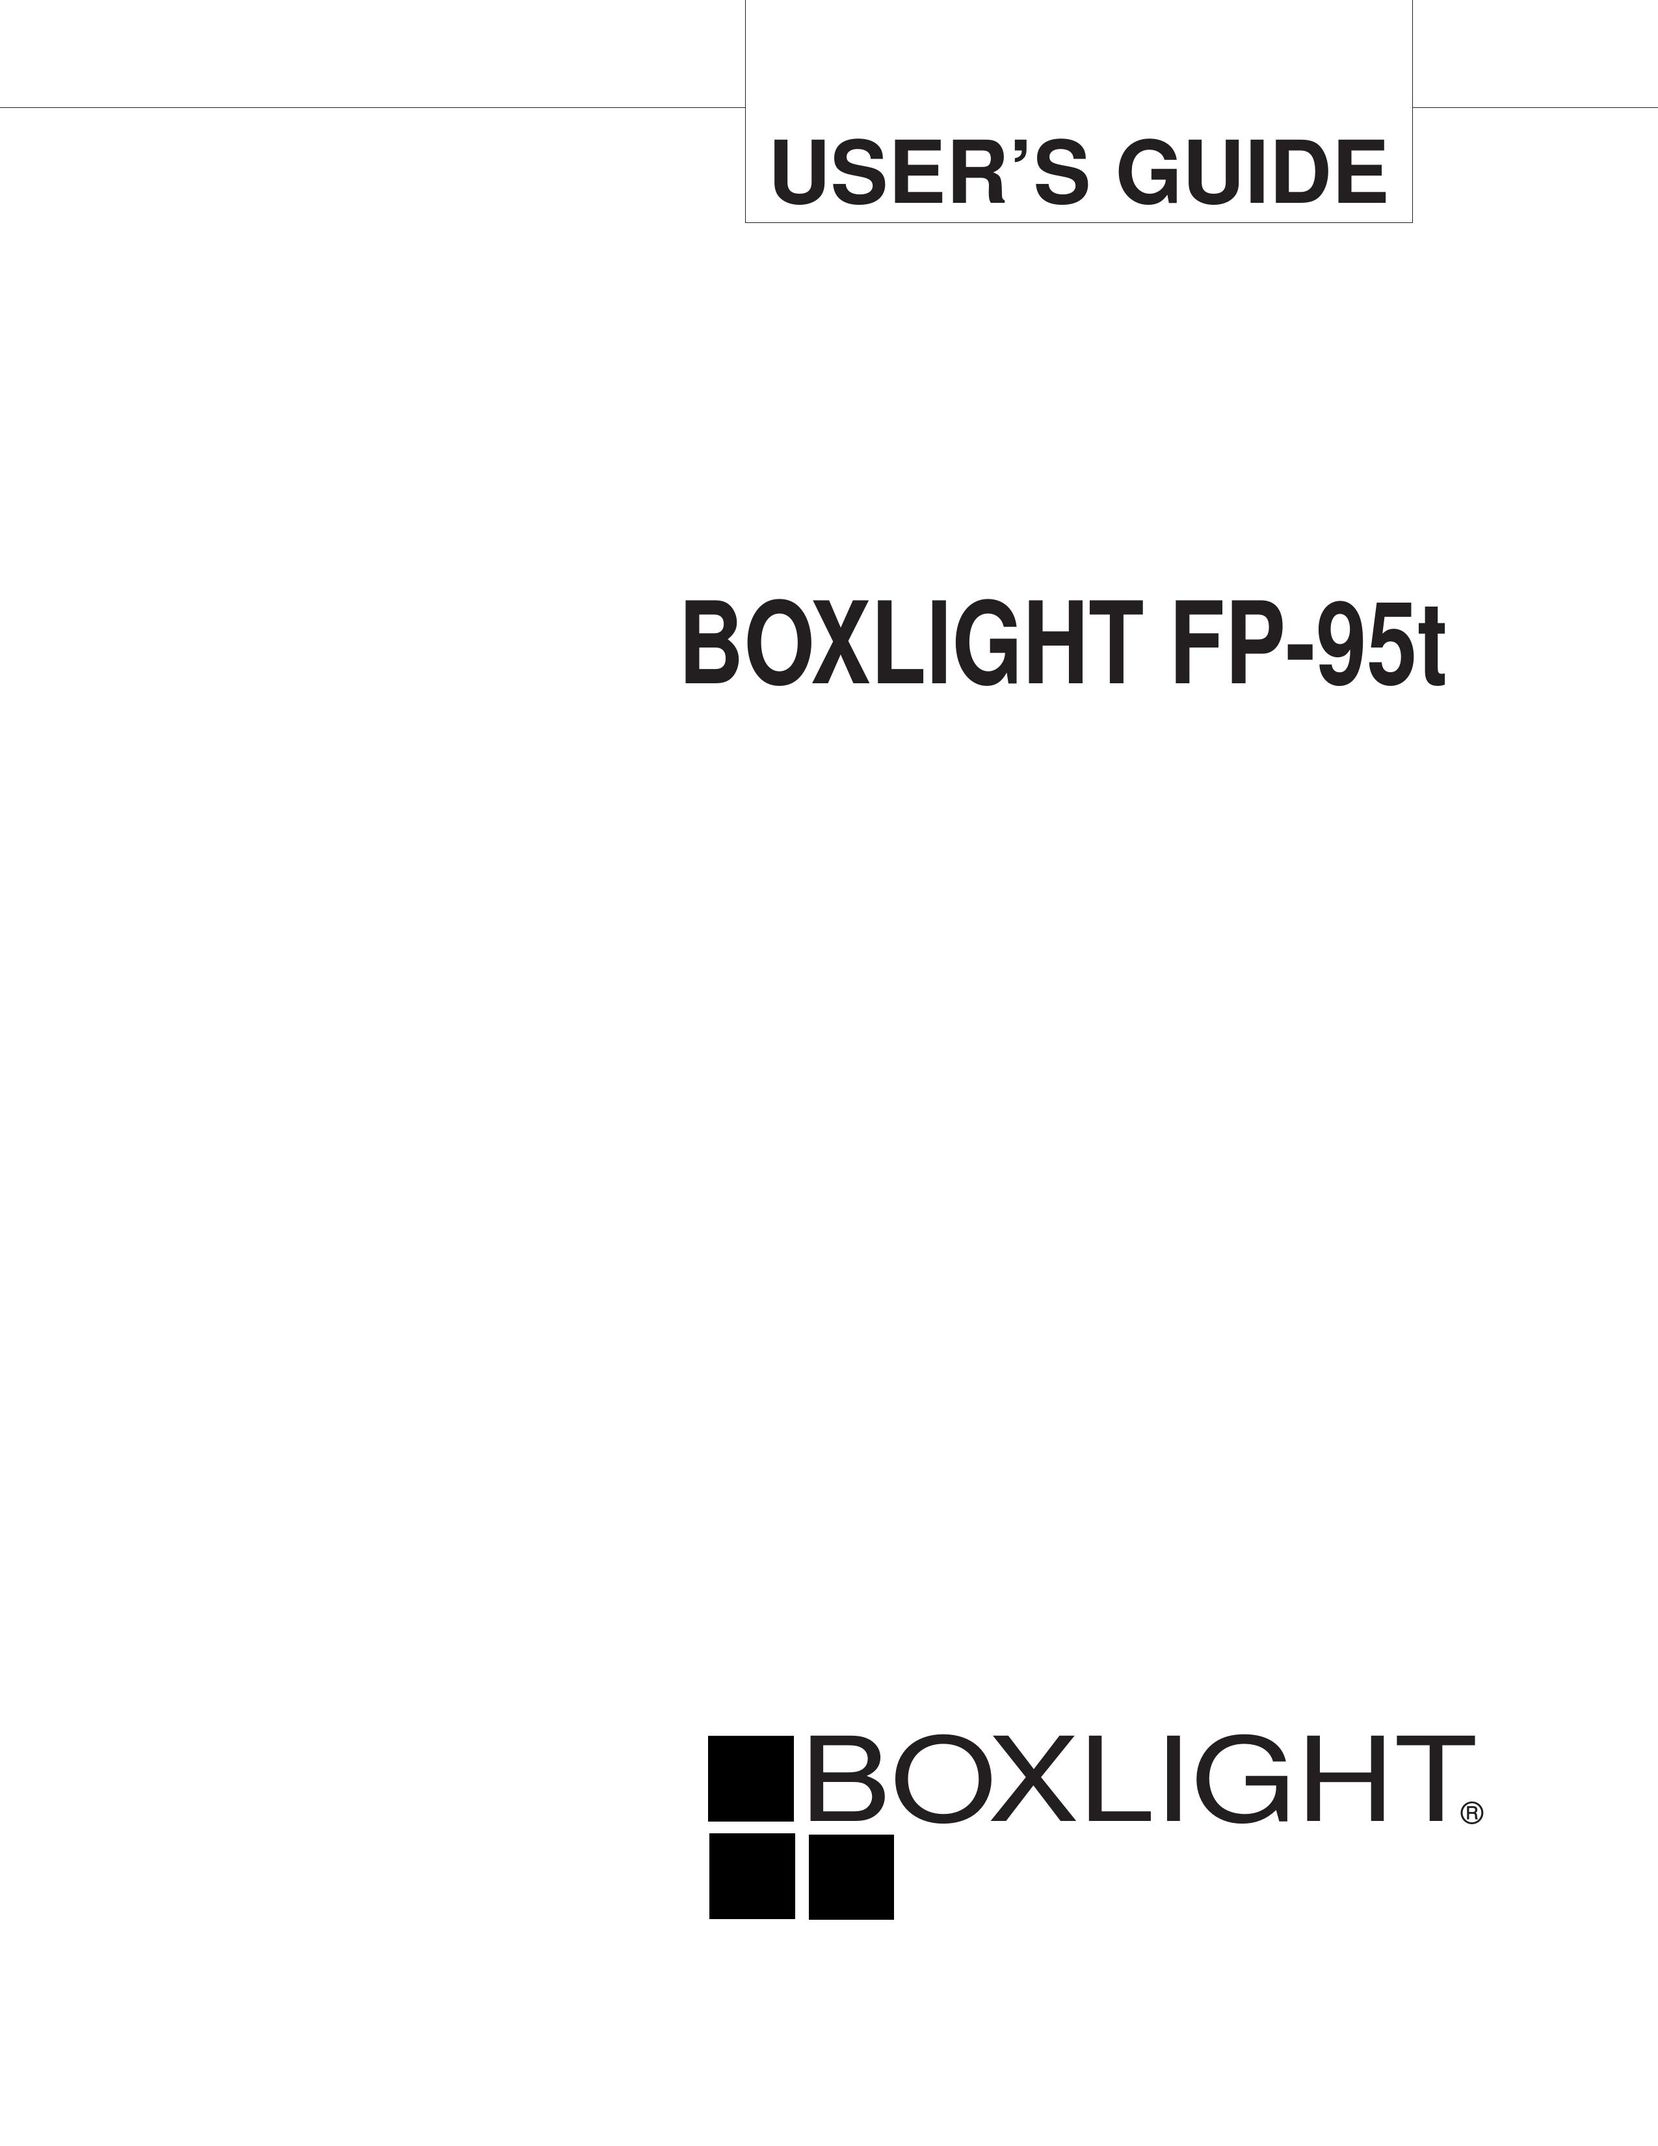 BOXLIGHT FP-95t Projector User Manual